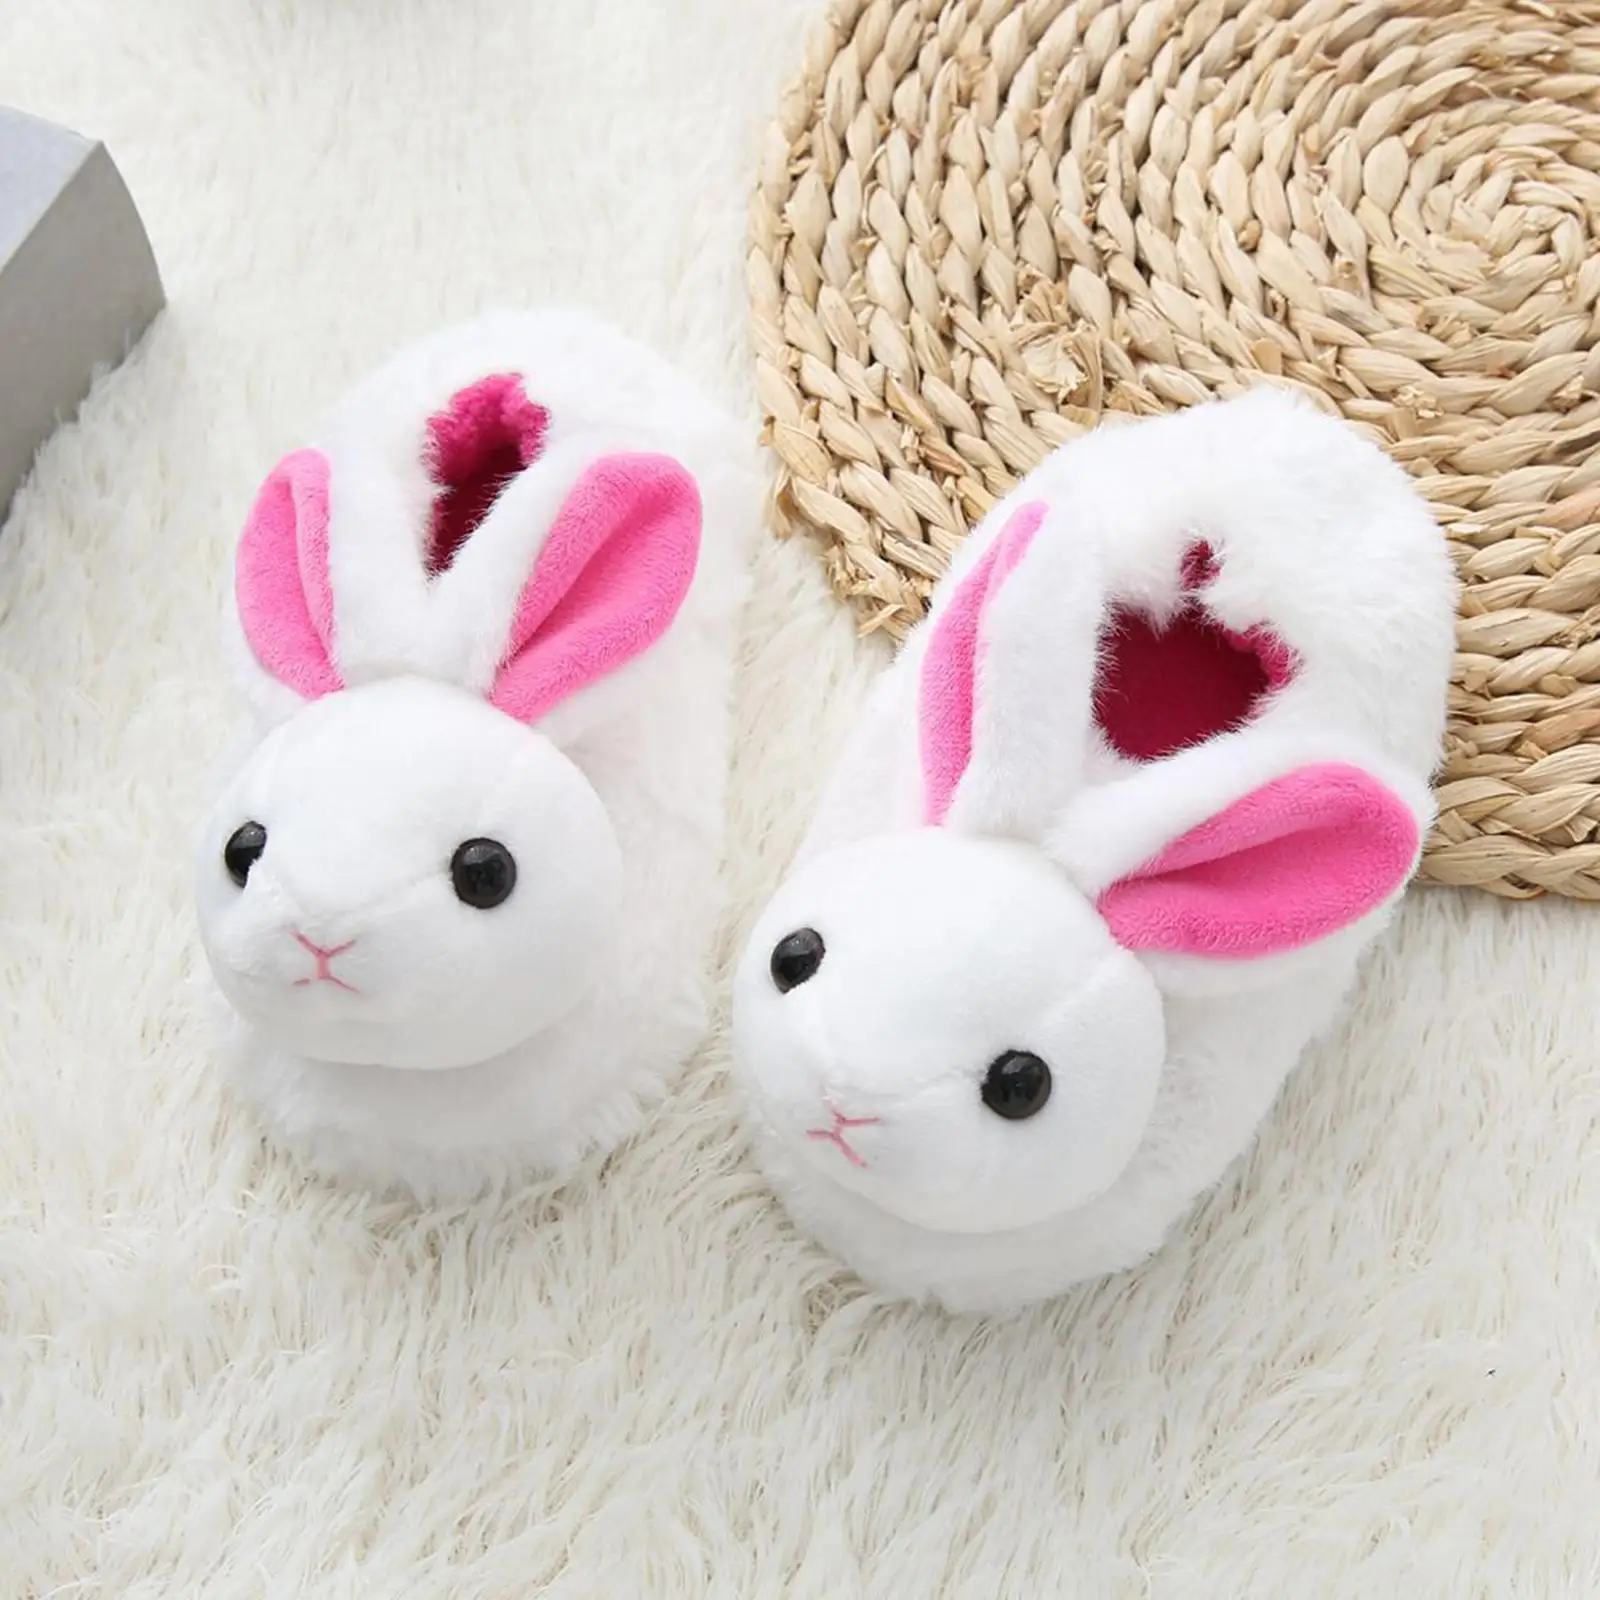 Novelty Rabbit Plush Slippers, Soft Indoor House Slippers Warm Slippers for Girl Kids Children Toddlers Boys